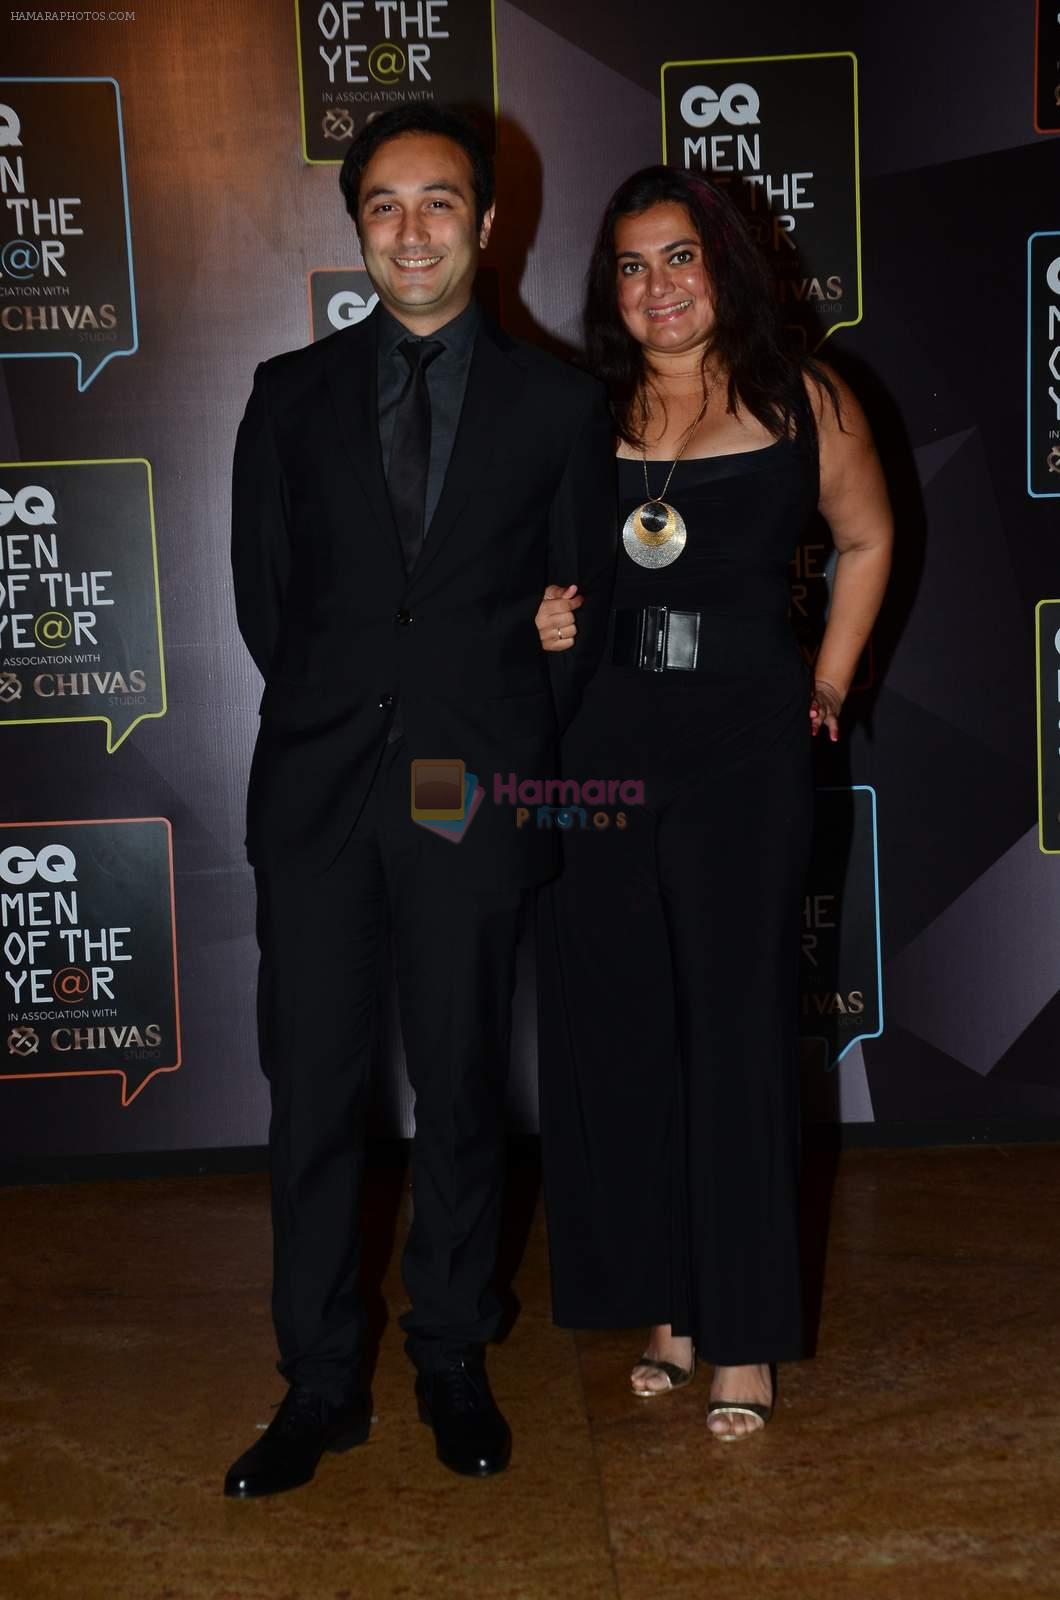 Divya Palat, Aditya Hitkari at GQ men of the year 2015 on 26th Sept 2015